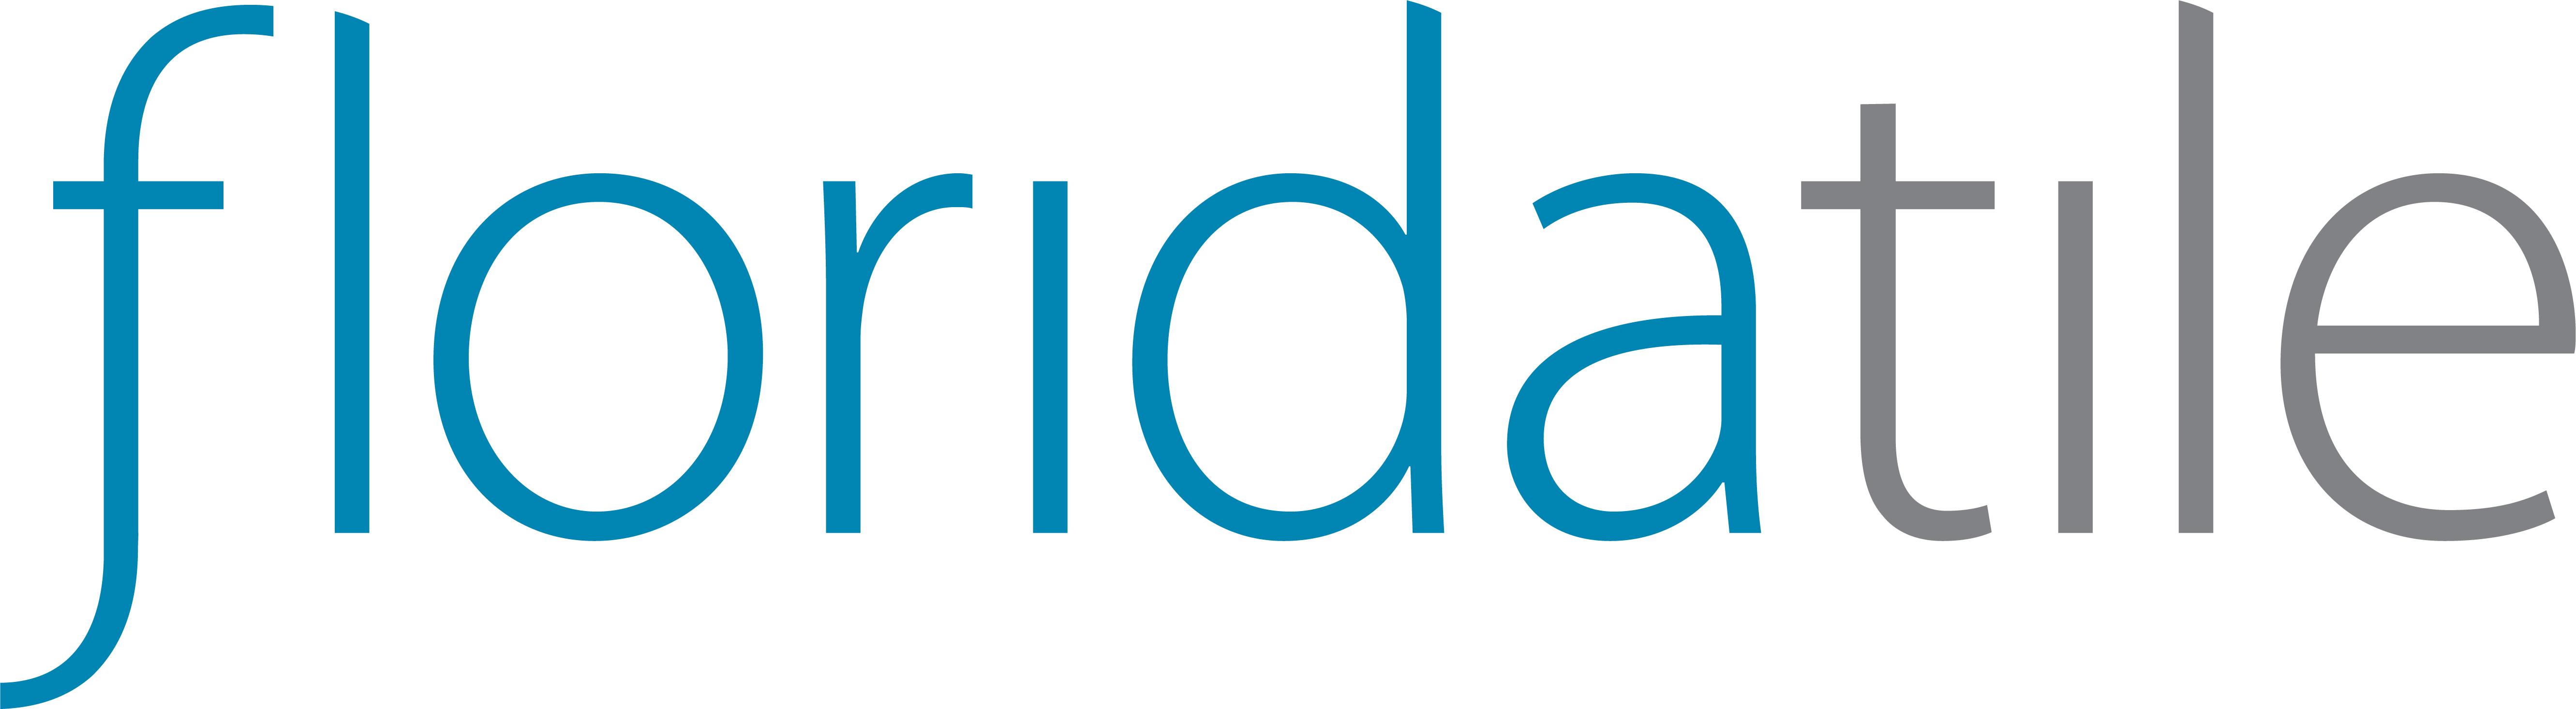 Florida Tile Logo